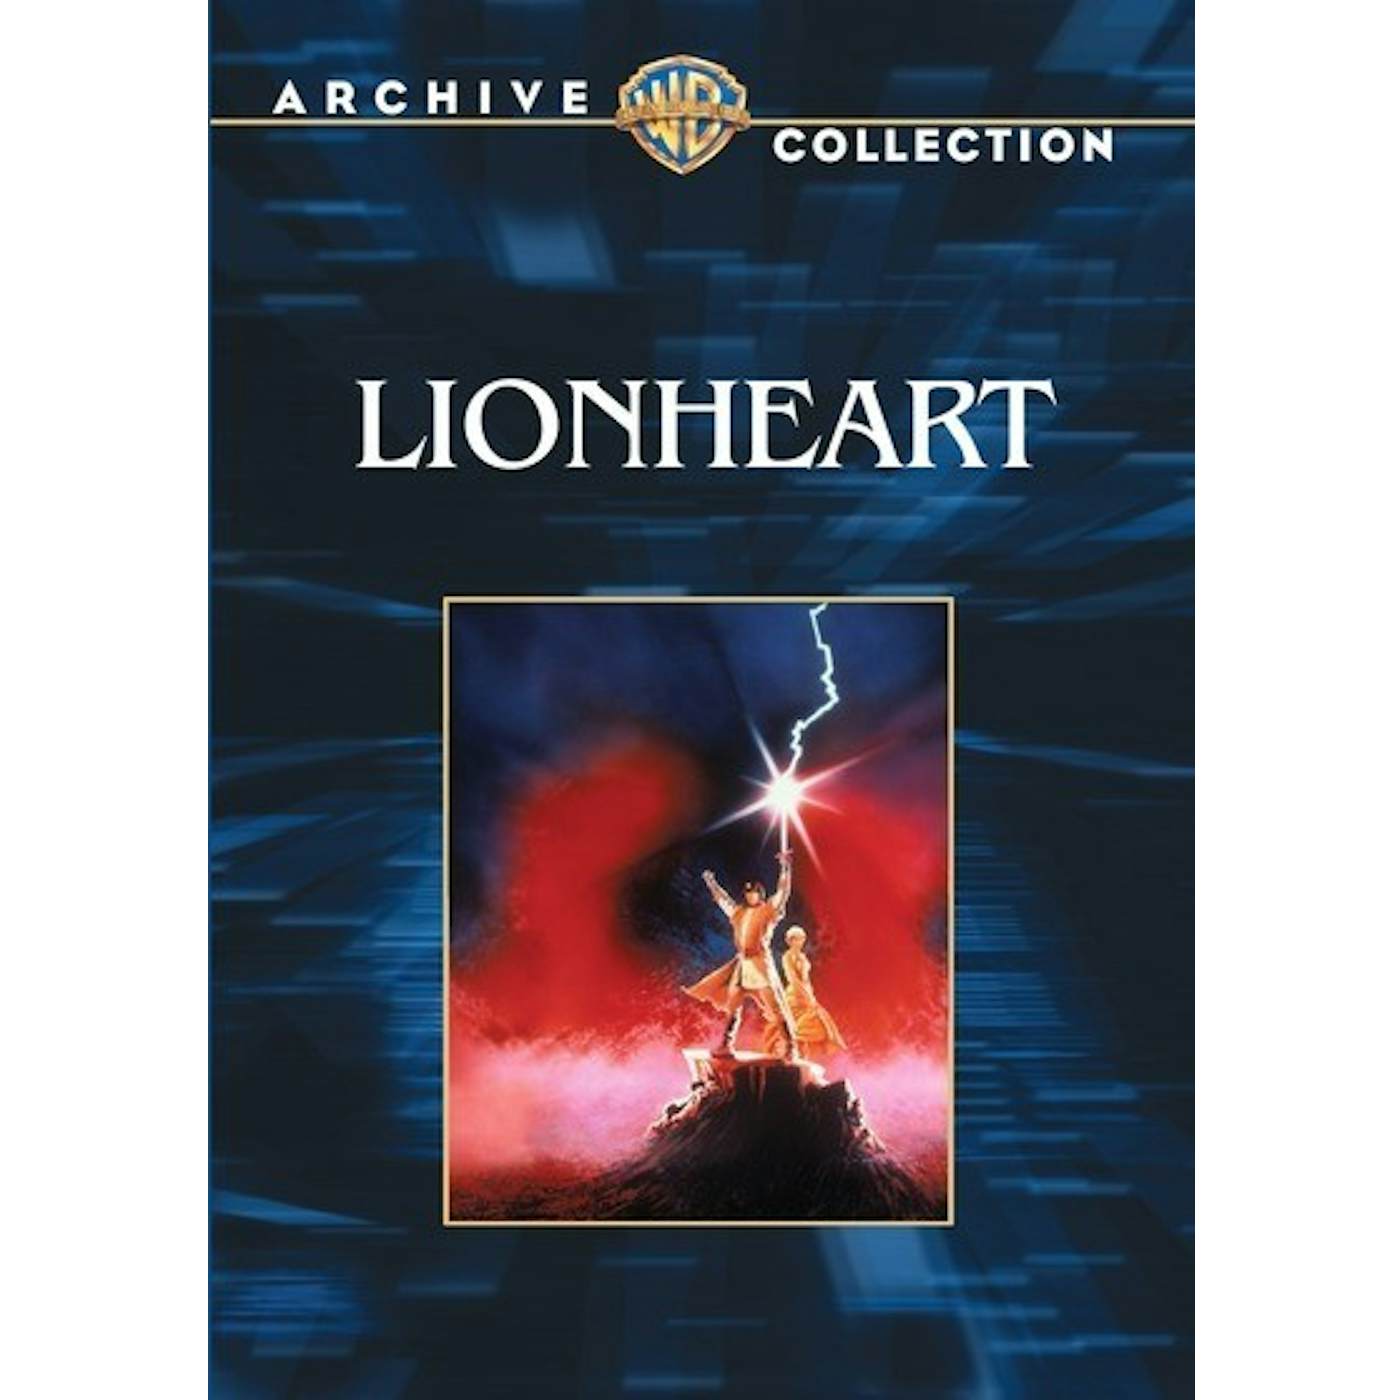 LIONHEART DVD